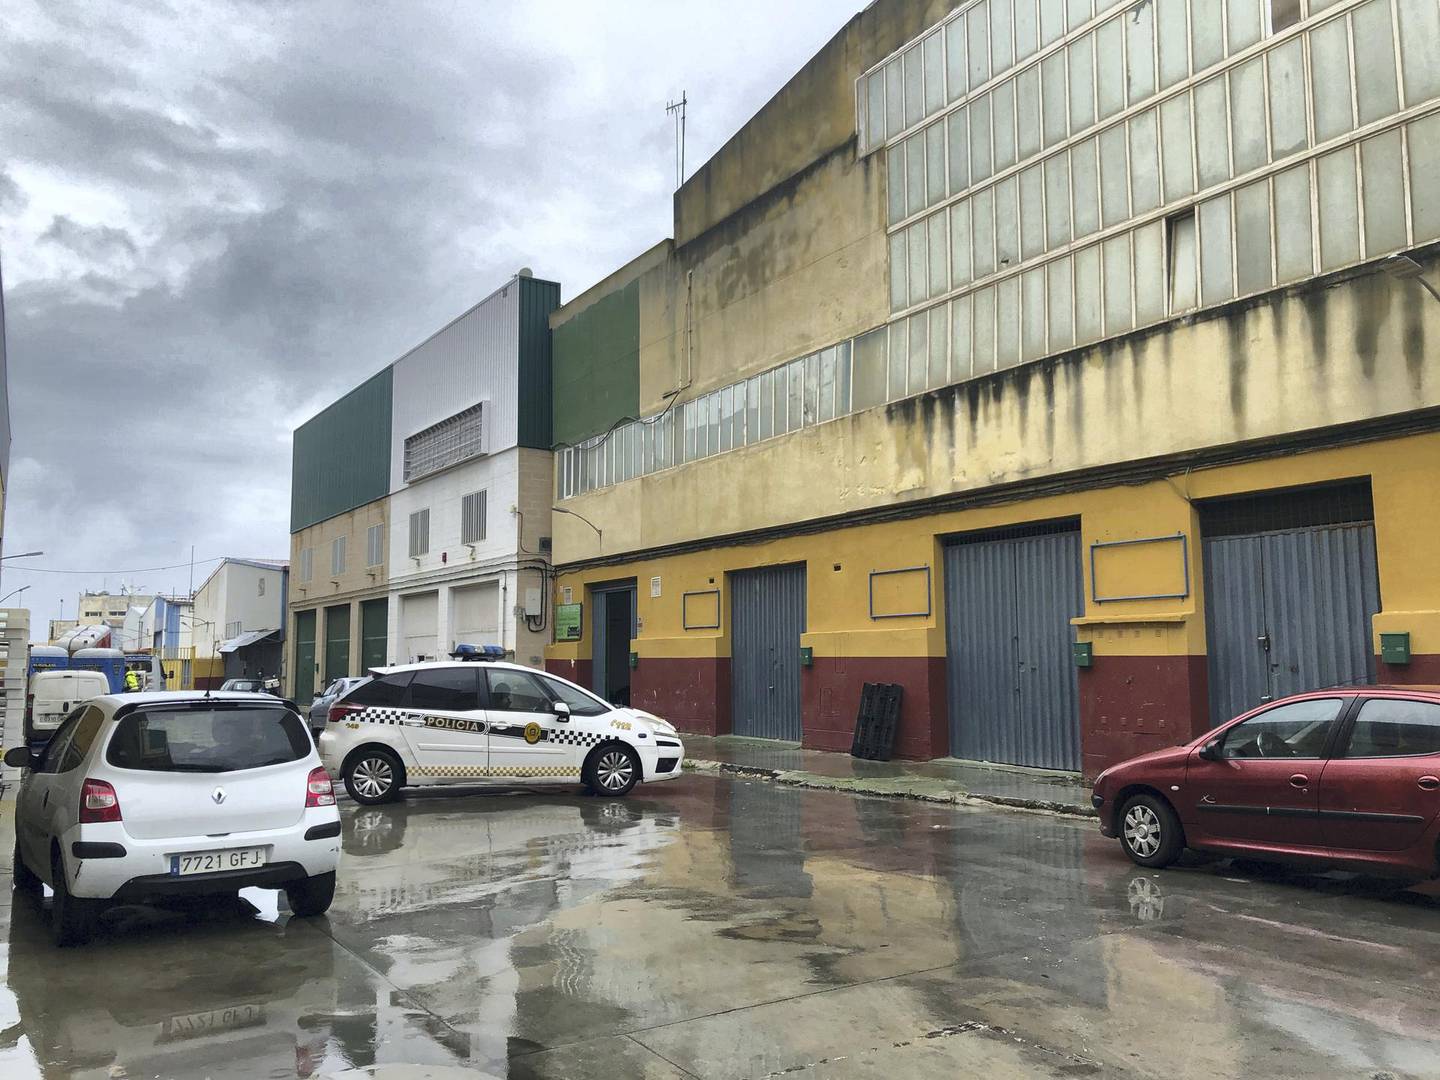 The Tarajal warehouse, Ceuta. Karen Rice